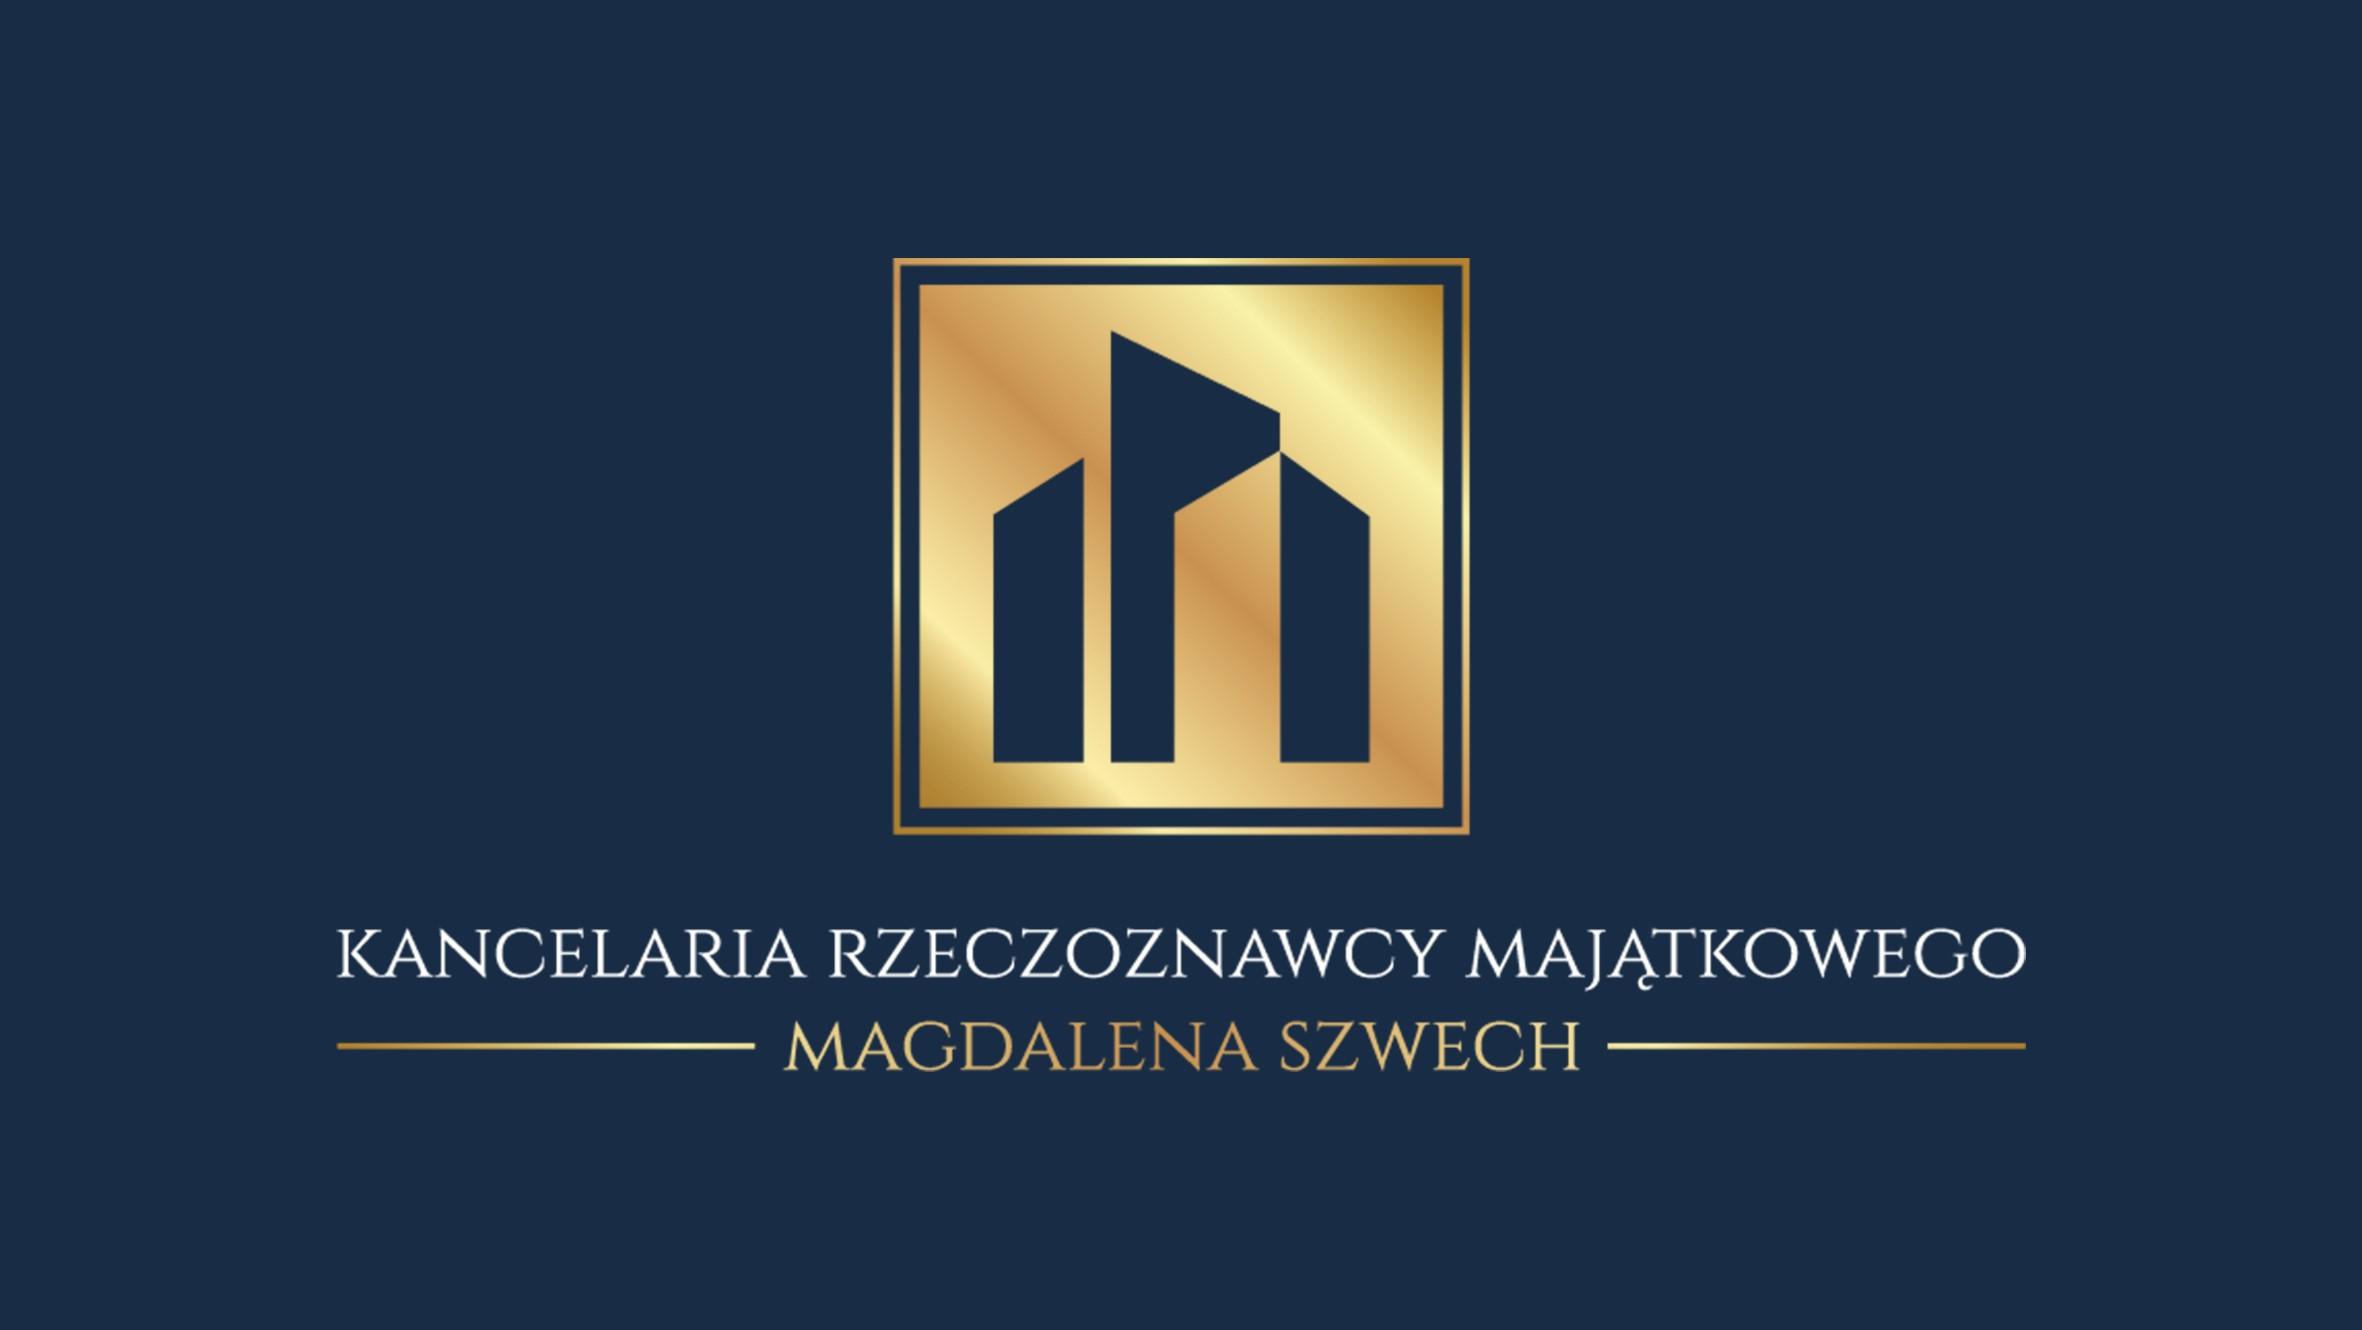 Kancelaria Rzeczoznawcy Majątkowego Magdalena Szwech